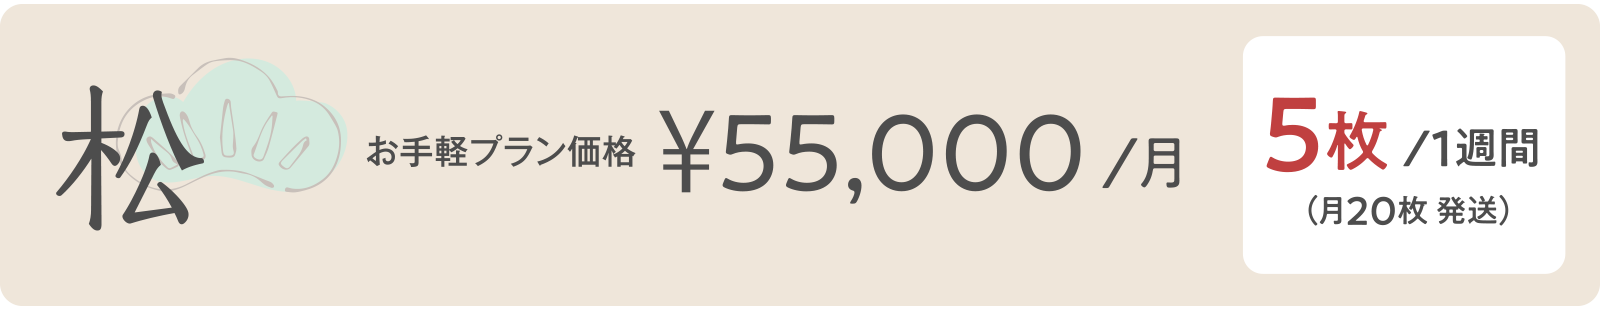 松 ¥55,000/月 5枚/１週間